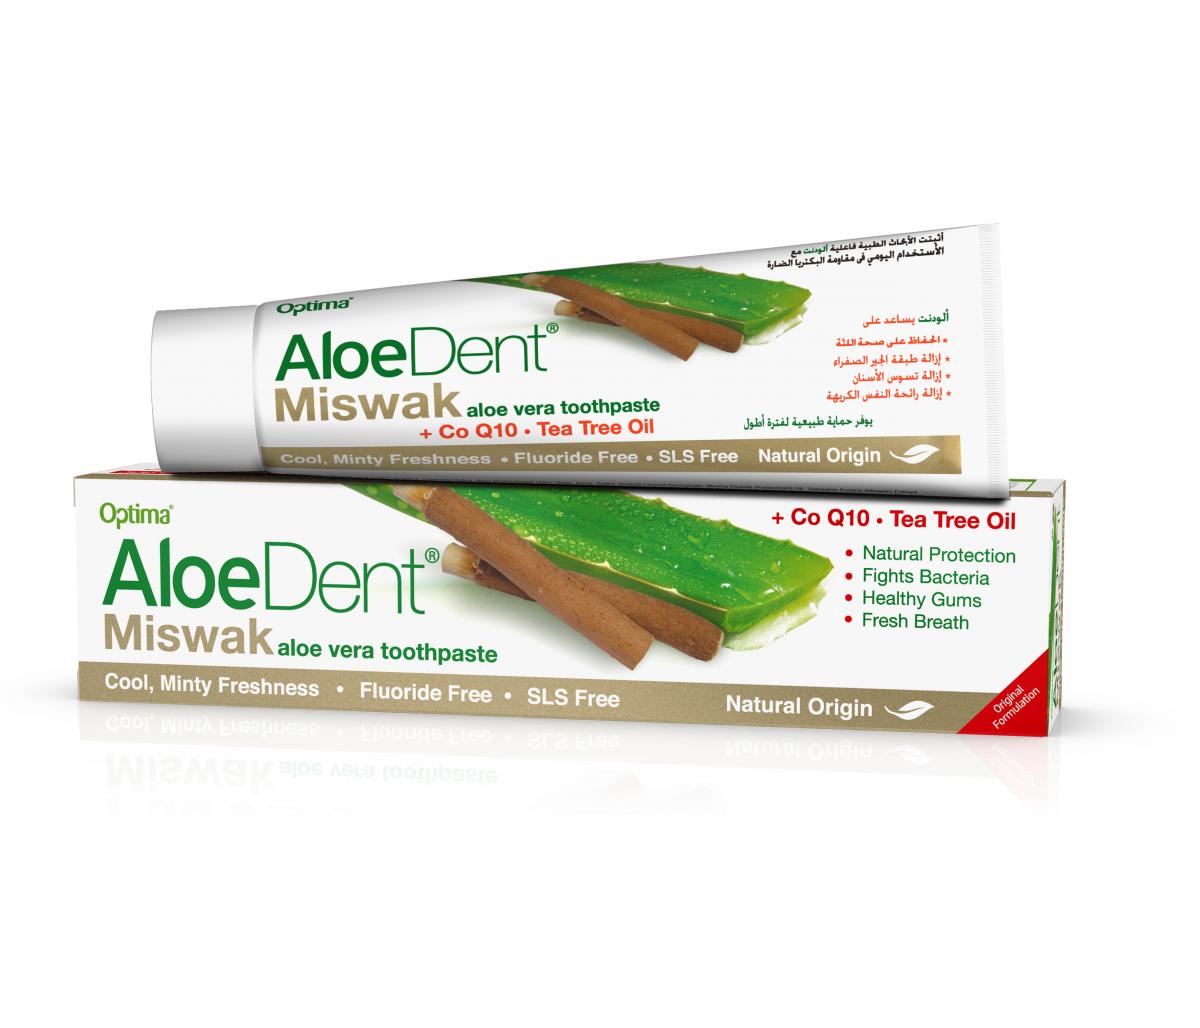 Natuurlijke bescherming voor uw tanden en tandvlees dankzij de toevoeging van Miswak, Tea Tree, Aloë Vera en Co Q10.